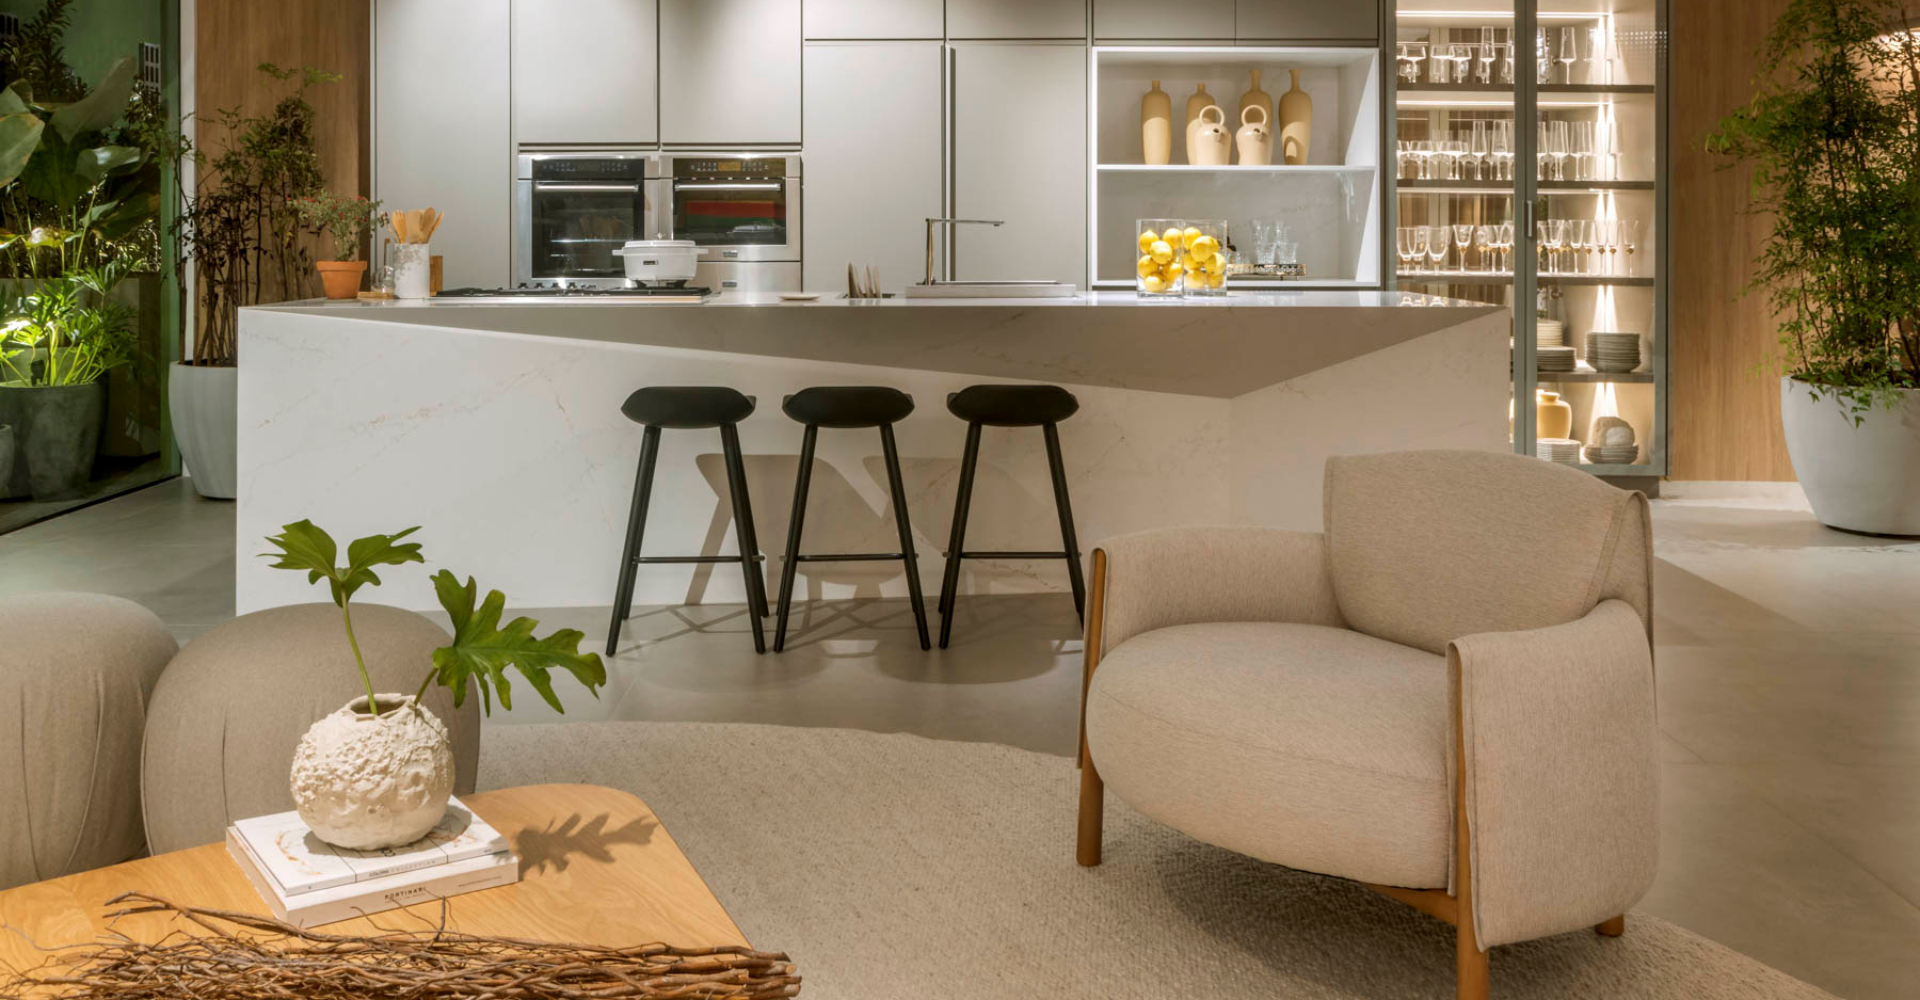 O quarto dos sonhos: estilo provençal. | Cenário Móveis - A loja mais completa em móveis finos e de luxo em Goiânia e Brasília